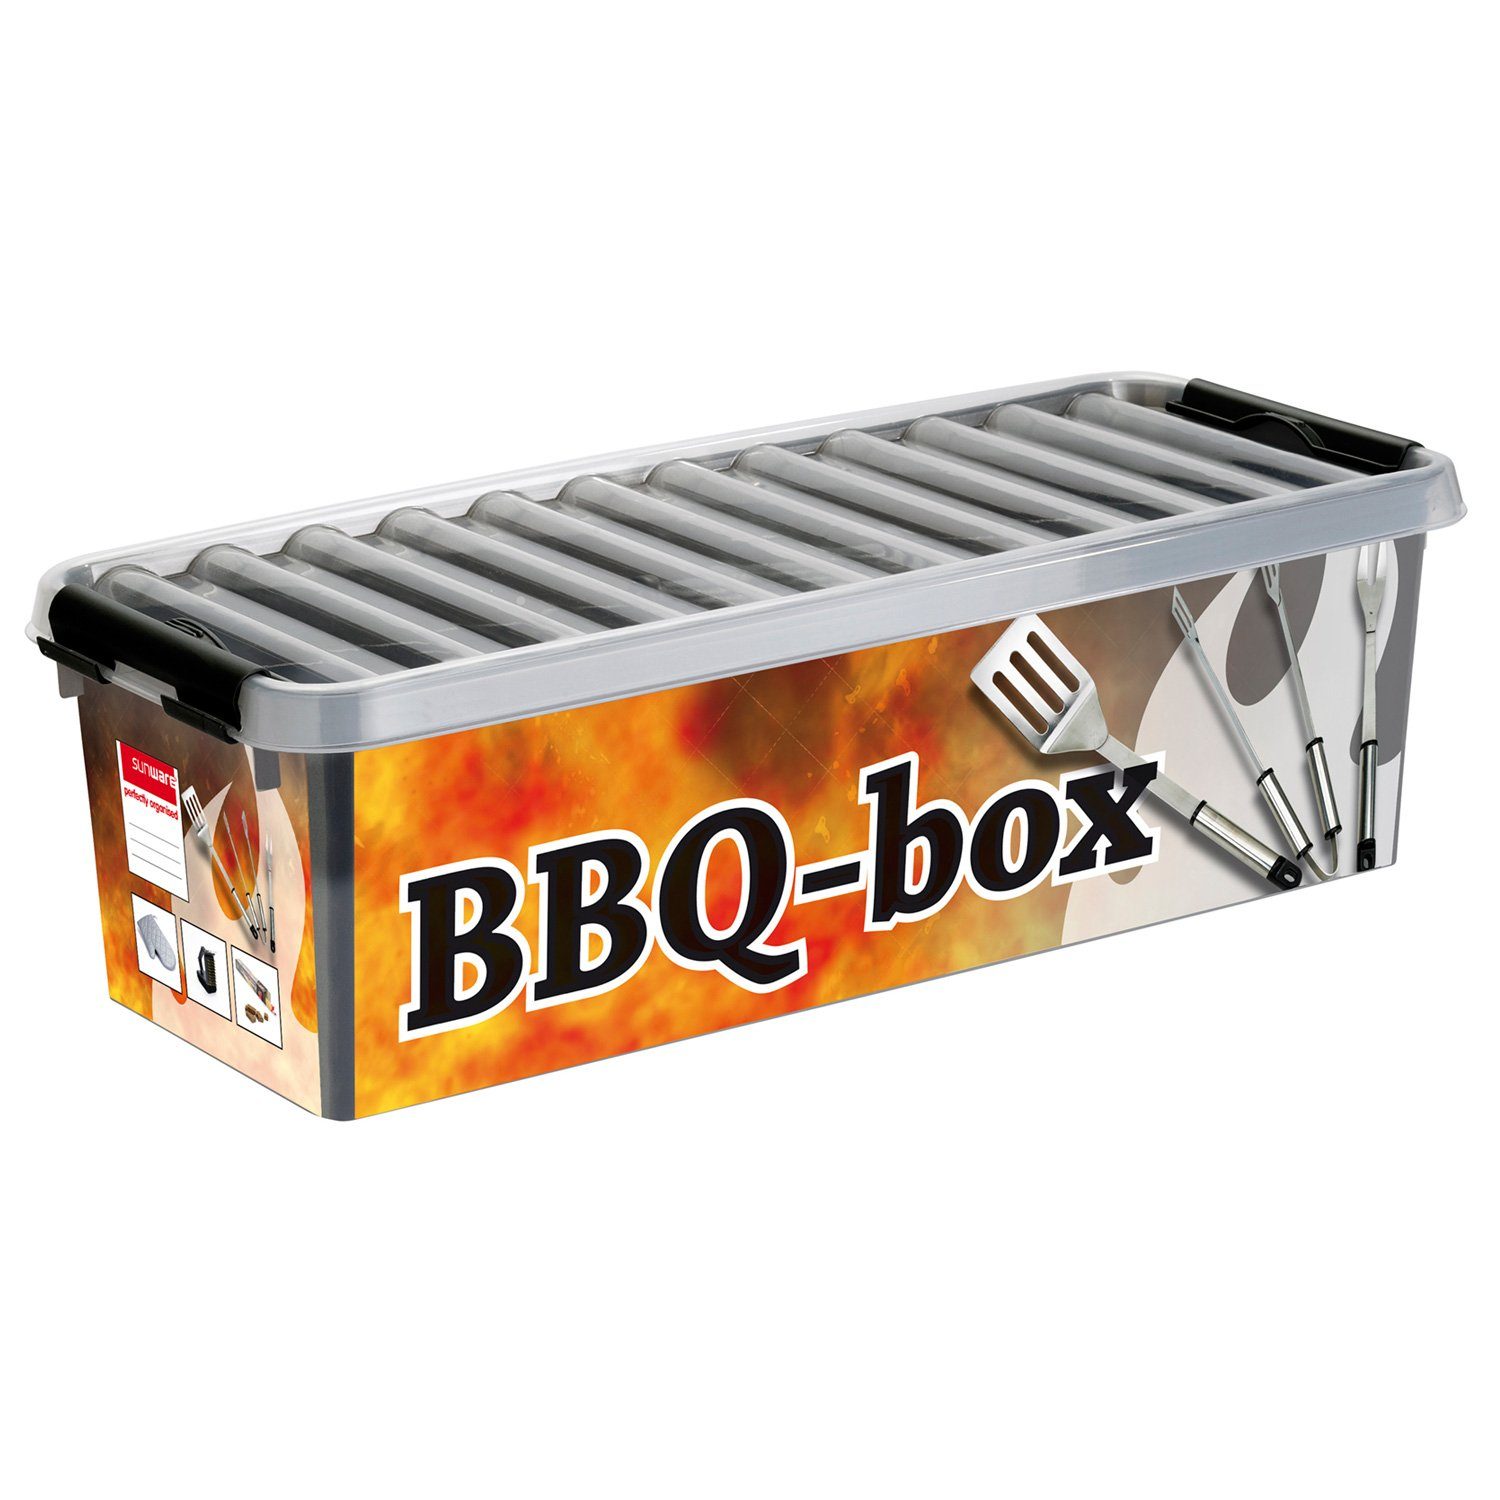 Sunware Aufbewahrungsbox BBQ Box 9,5 Liter - Aufbewahrungsbox Sortimentskiste